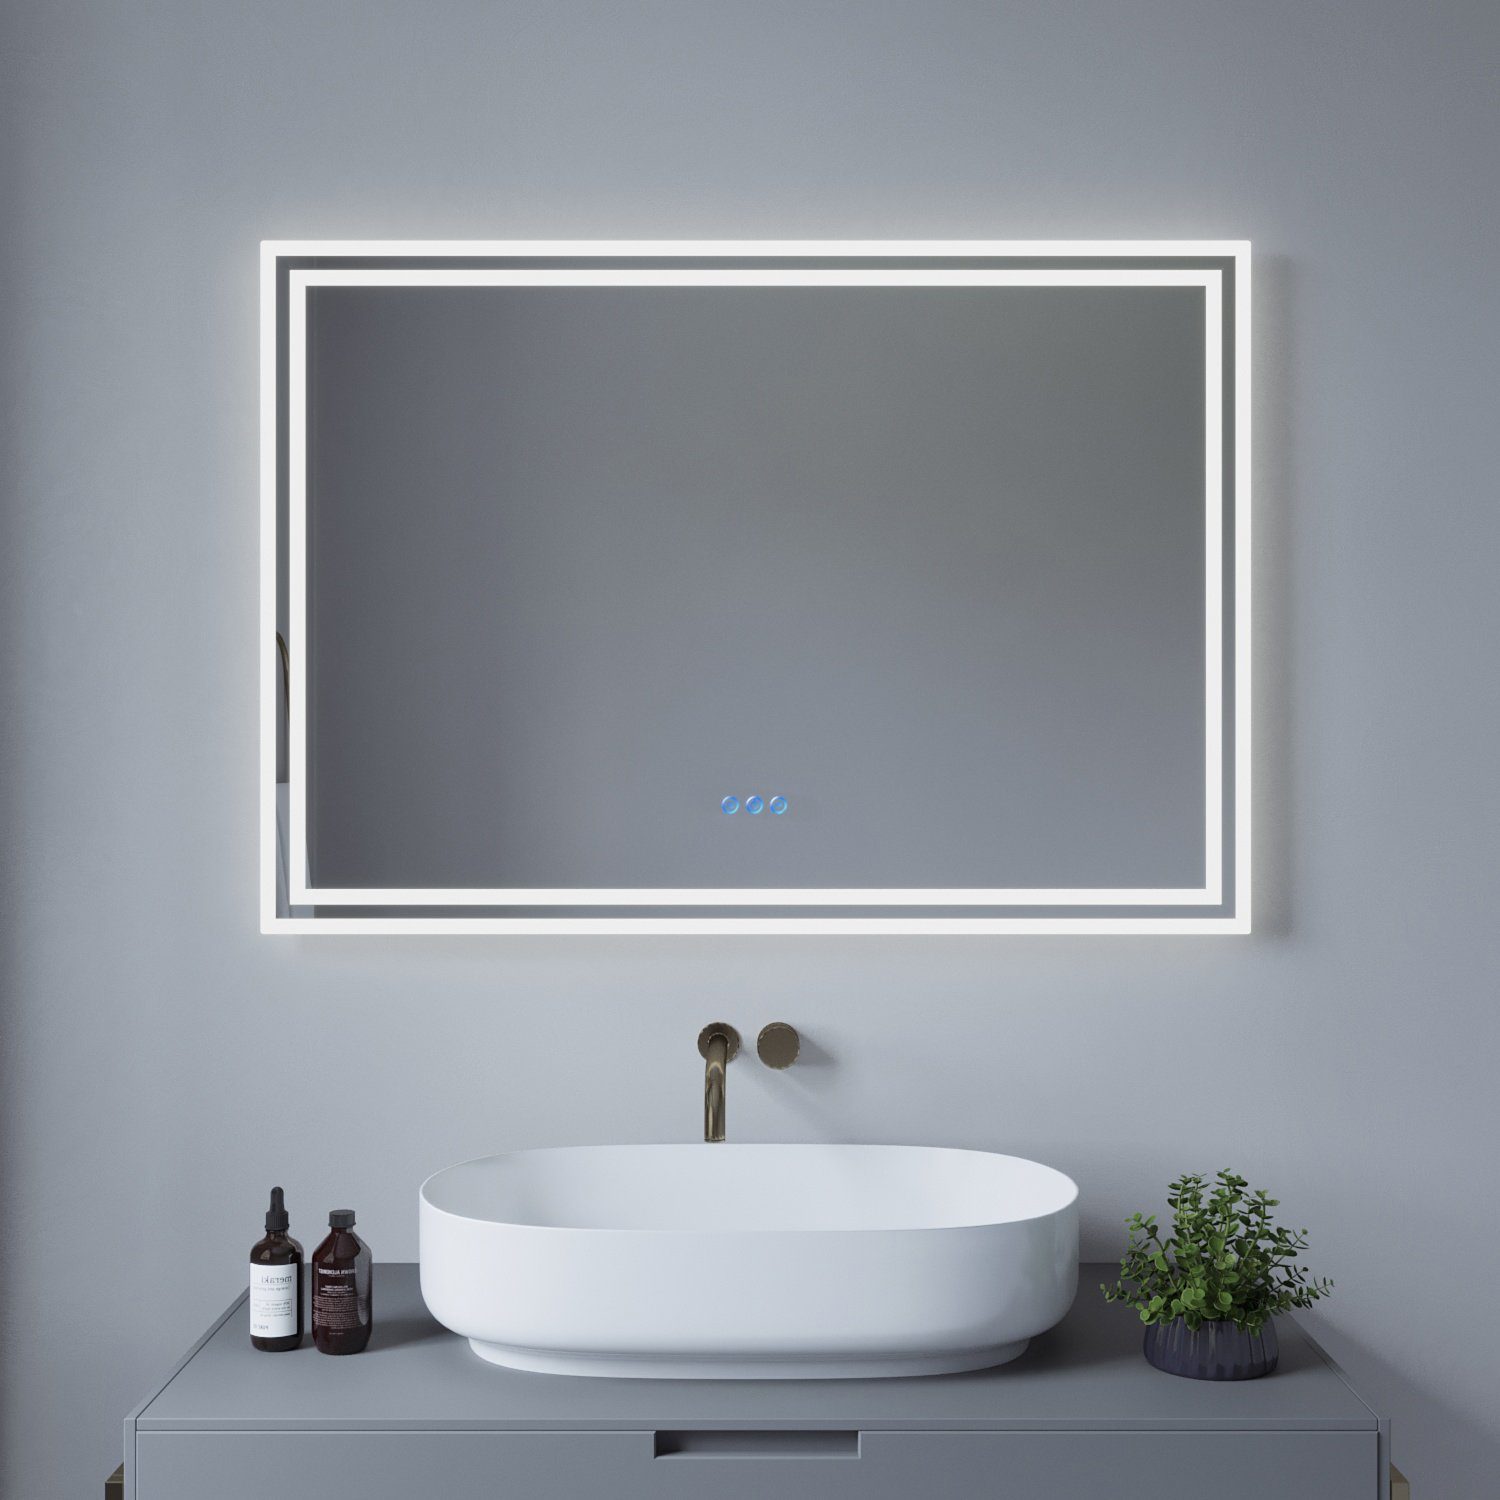 AQUABATOS Badspiegel LED Badspiegel 100x70cm 140x70cm Badezimmerspiegel mit Beleuchtung (Bad Spiegel mit Licht Wandspiegel mit Touch-Schalter Lichtspiegel), Dimmbar Beschlagfrei Kaltweiß Warmweiß Memory-Funktion IP44